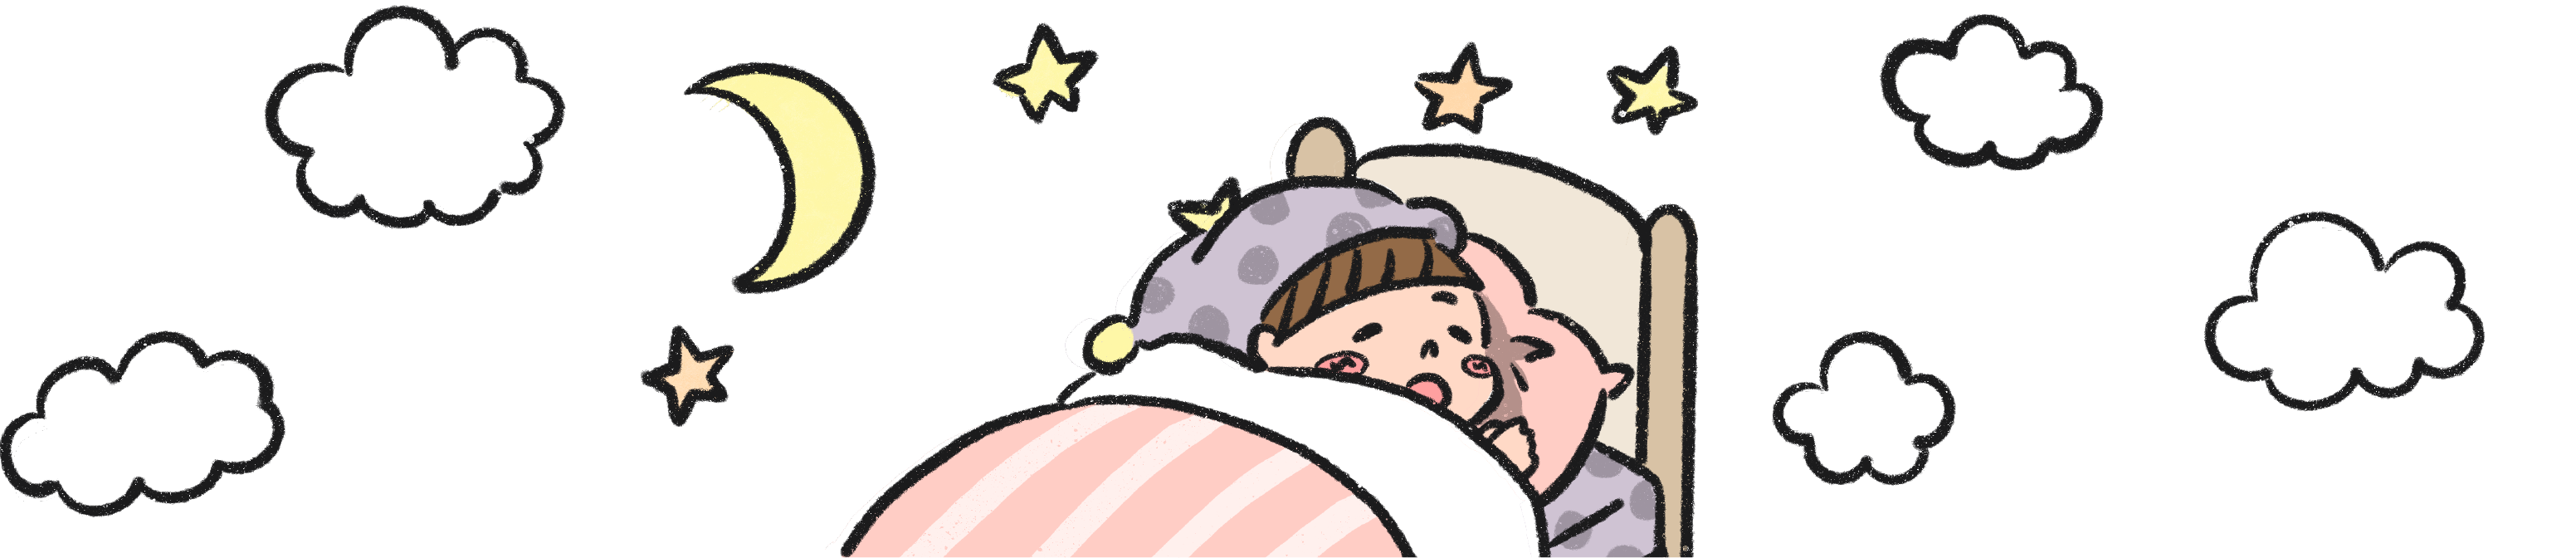 ベッドですやすや眠るコヅーの周りに月、星、雲が周囲に配置されたイラスト